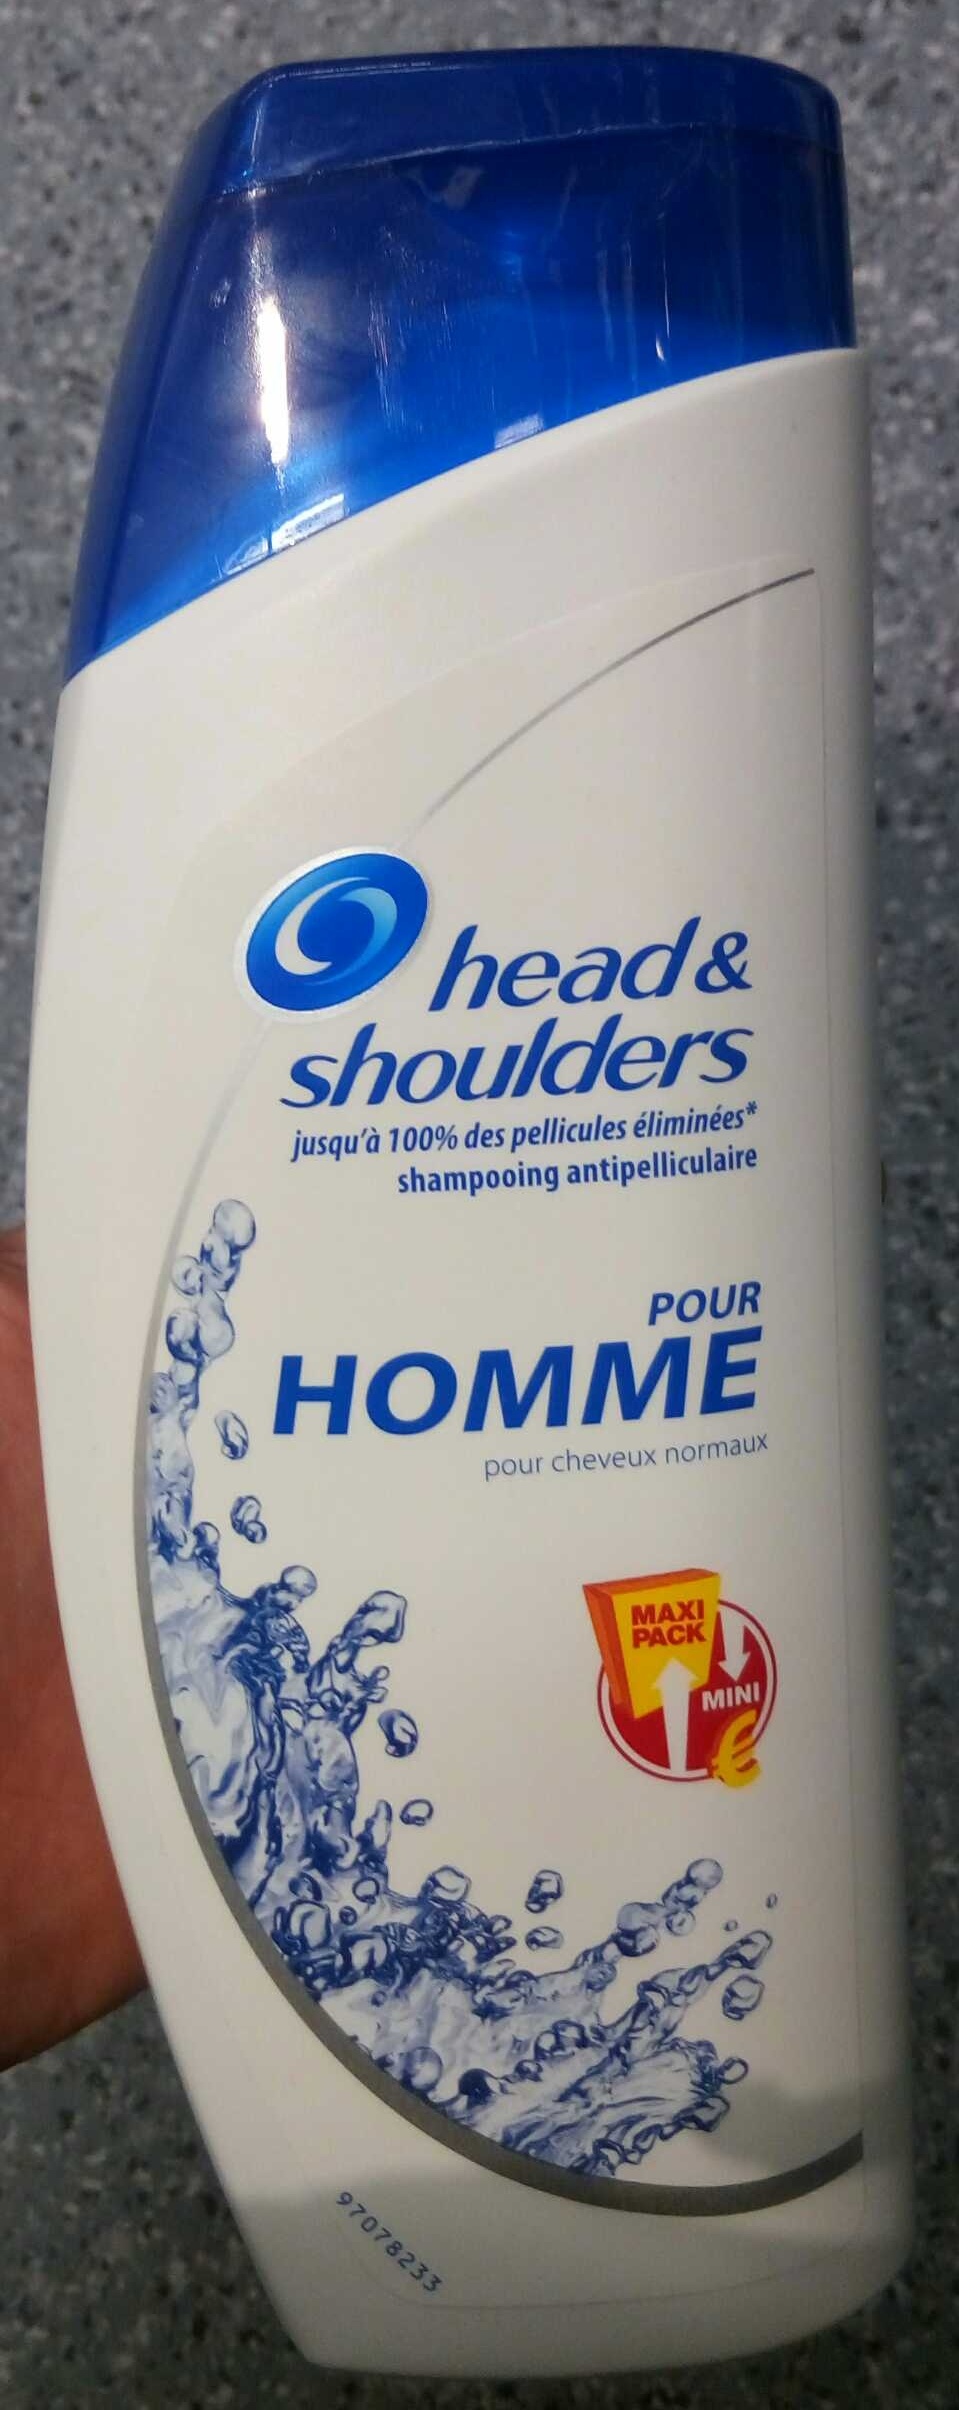 Shampooing antipelliculaire pour homme (maxi pack) - Produit - fr